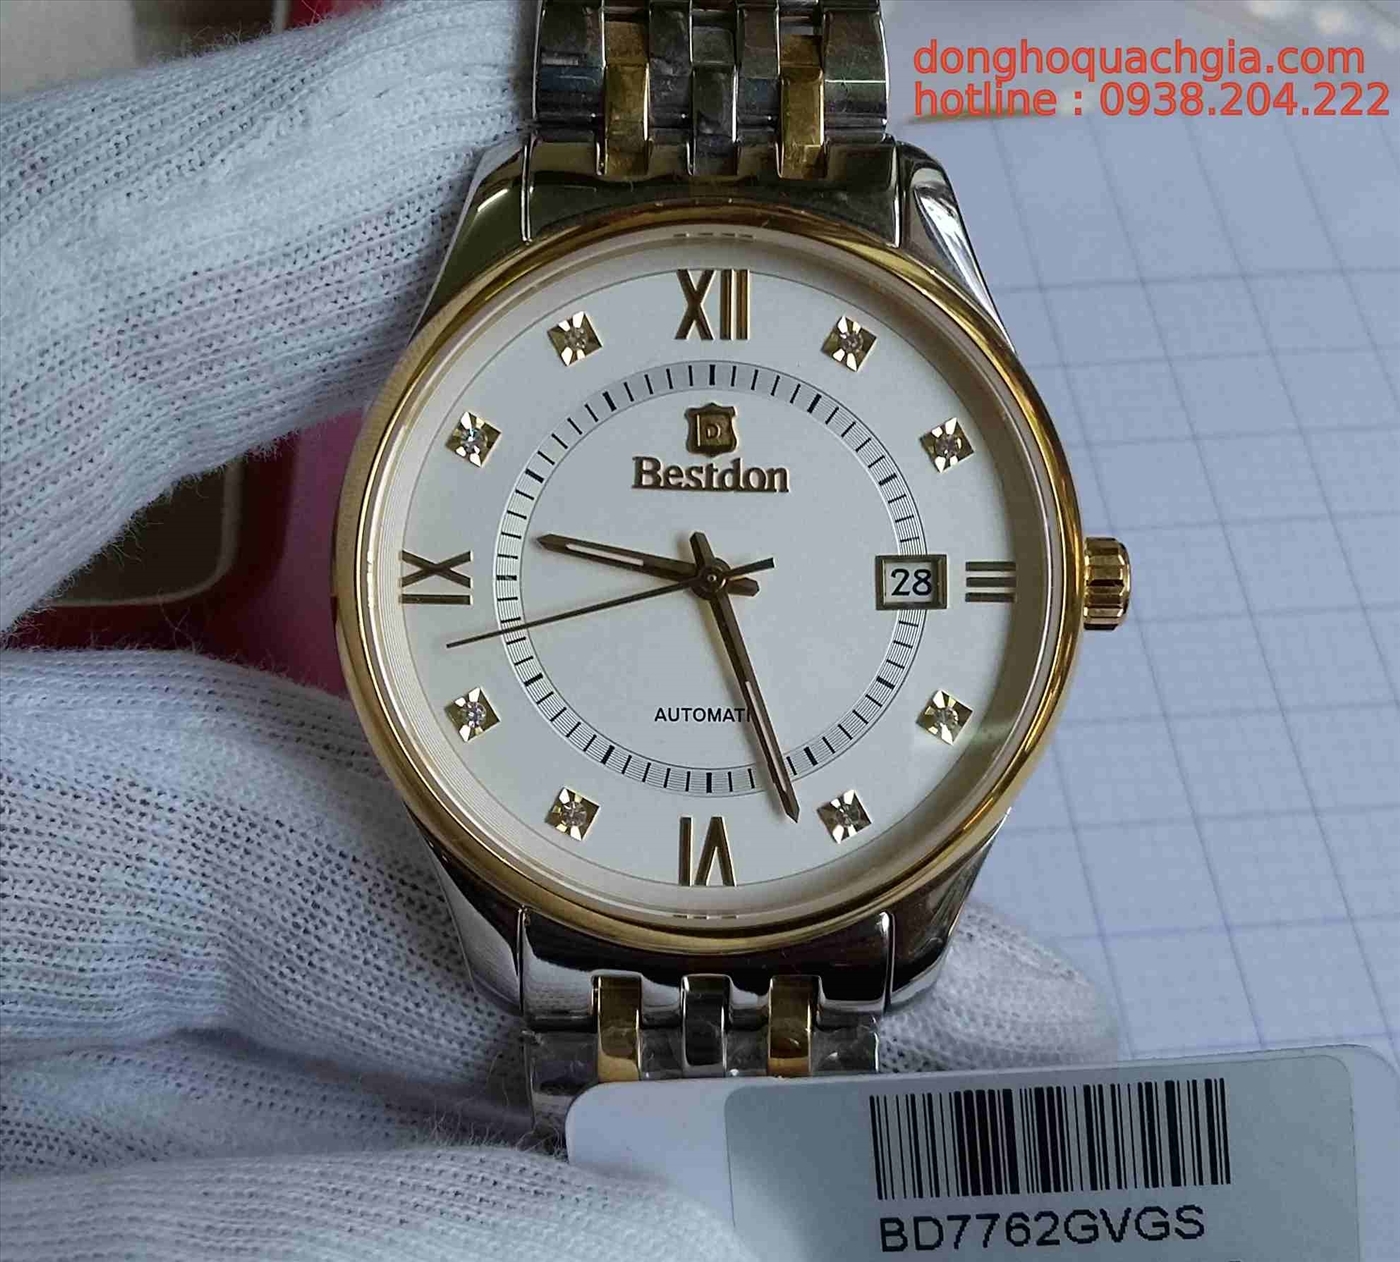 Đồng hồ nam tự động chính hãng Bestdon BD7762gvgs (B.H 3 NĂM)